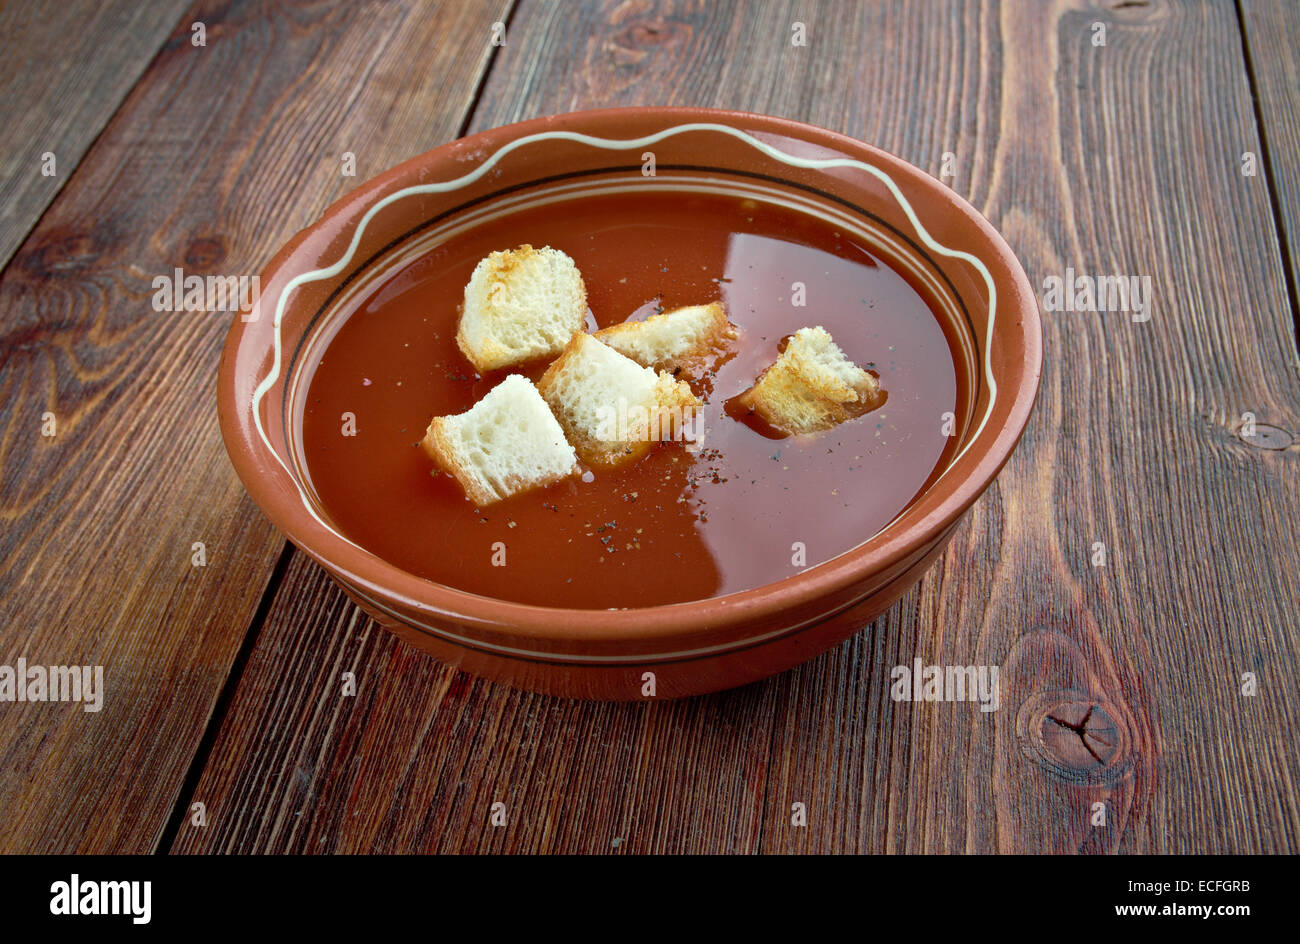 Tarhana-Suppe - traditionelle türkische Suppe tarhana Stockfotografie ...